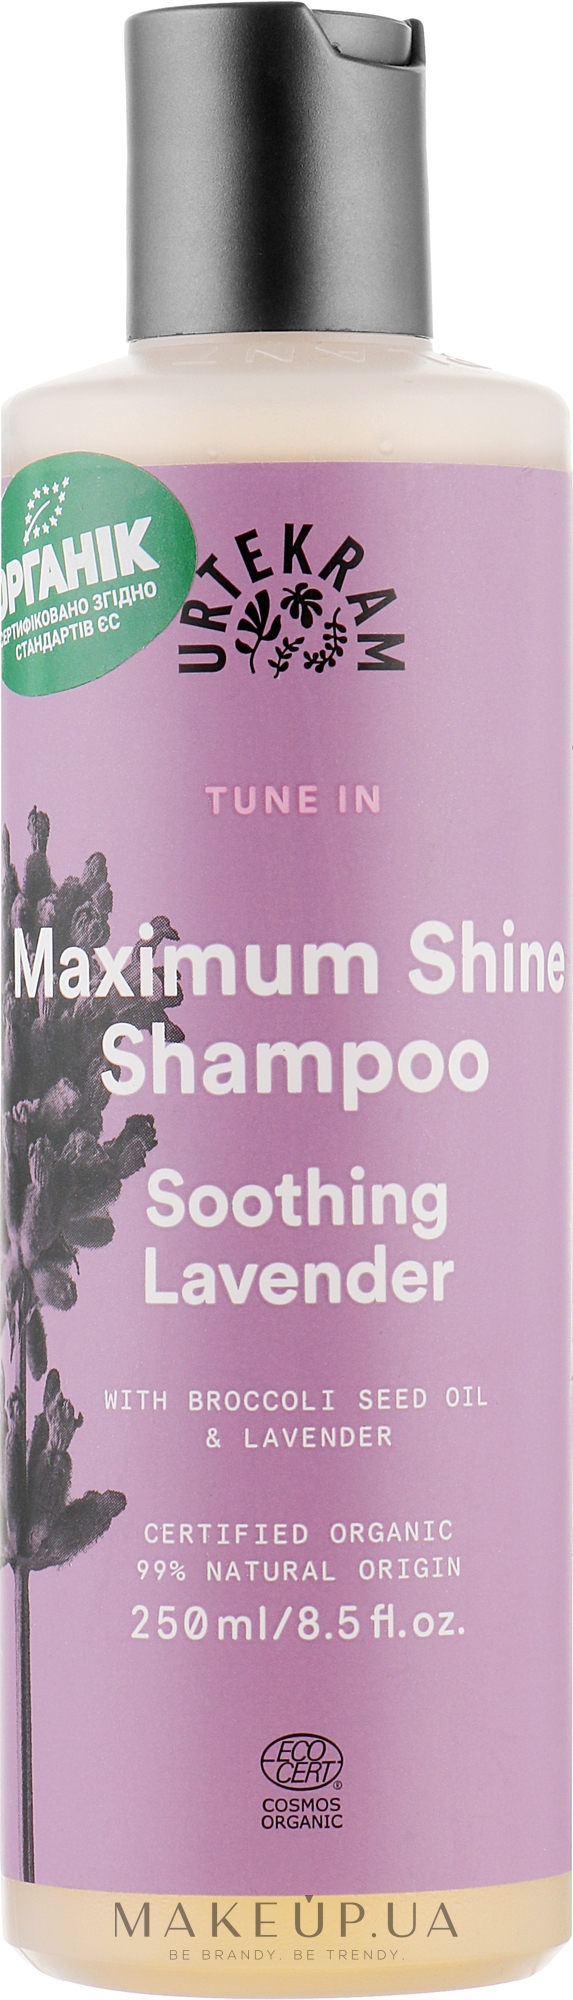 Органічний шампунь для волосся "Заспокійлива лаванда" - Urtekram Soothing Lavender Maximum Shine Shampoo — фото 250ml